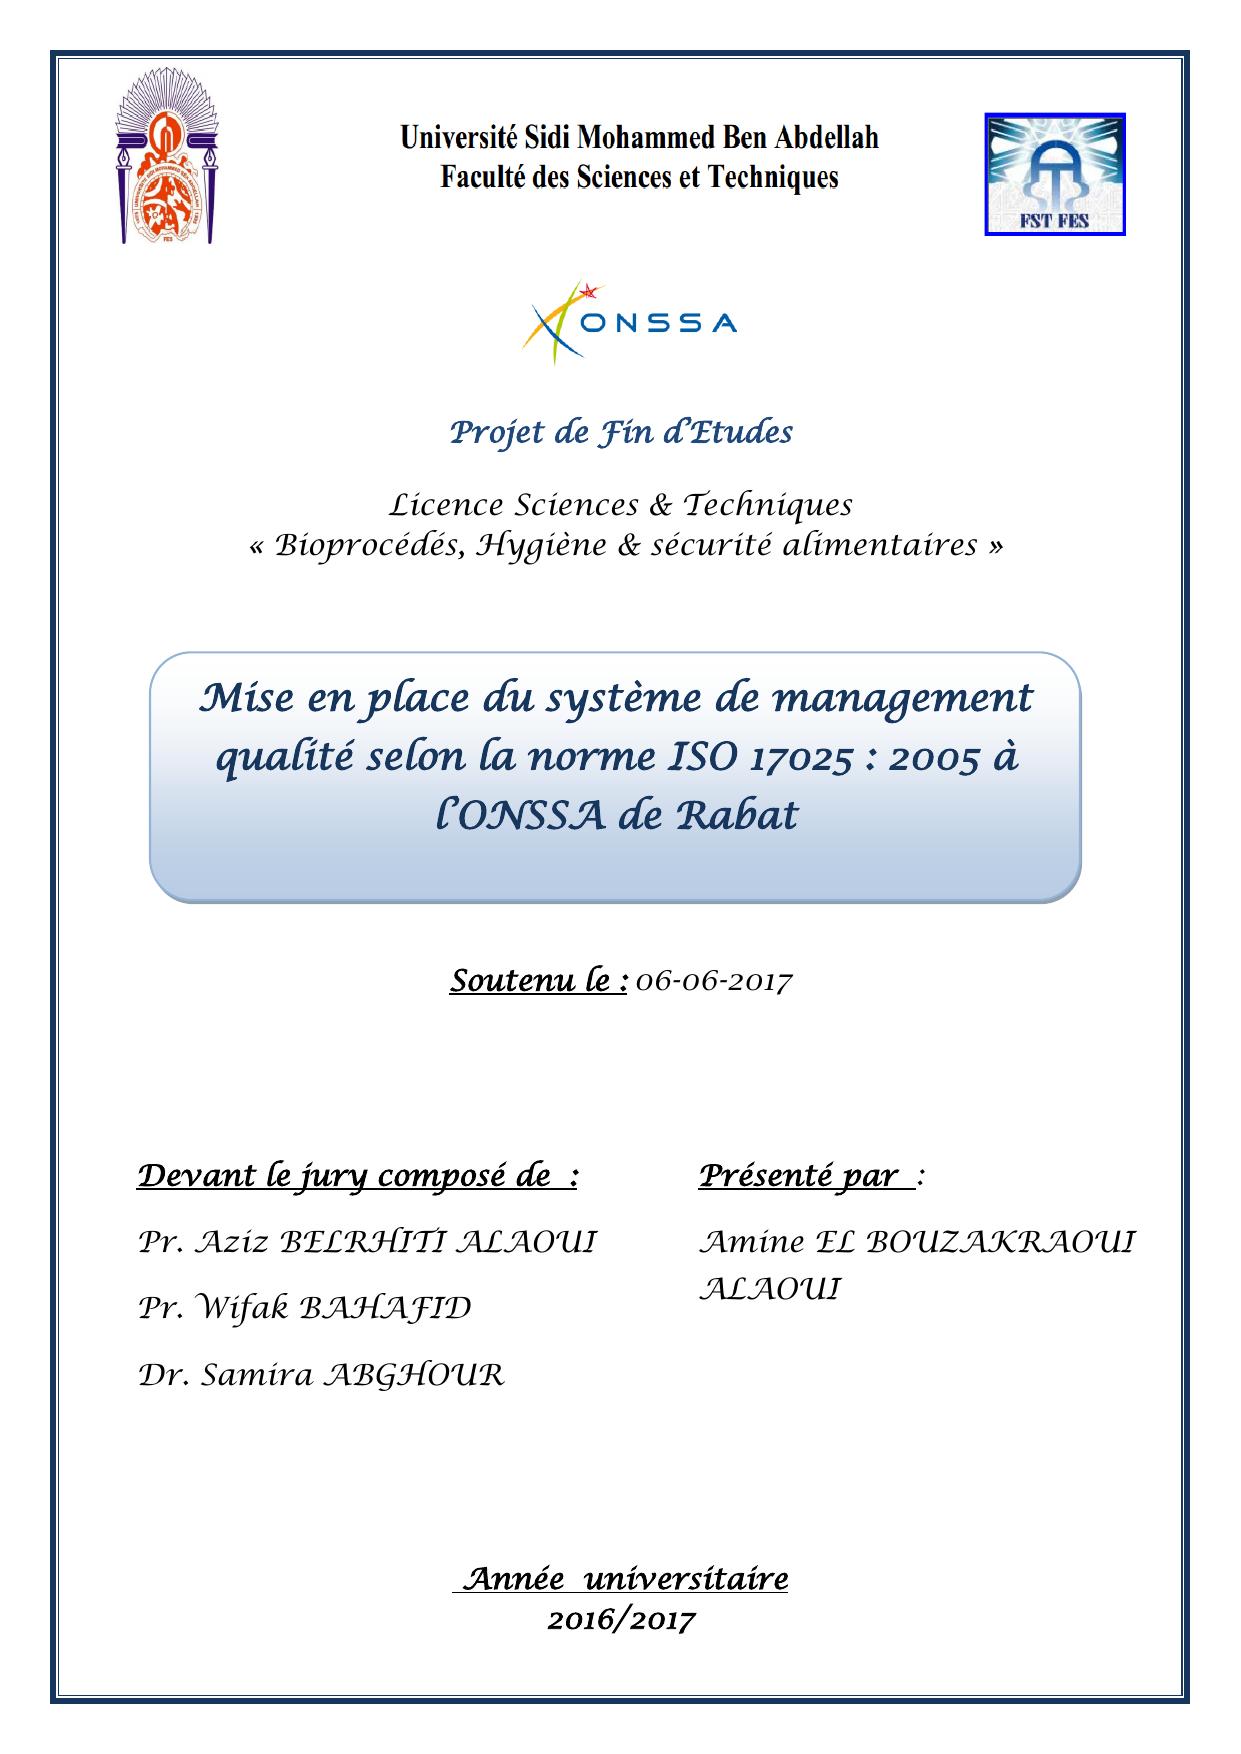 Mise en place du système de management qualité selon la norme ISO 17025 : 2005 à l’ONSSA de Rabat